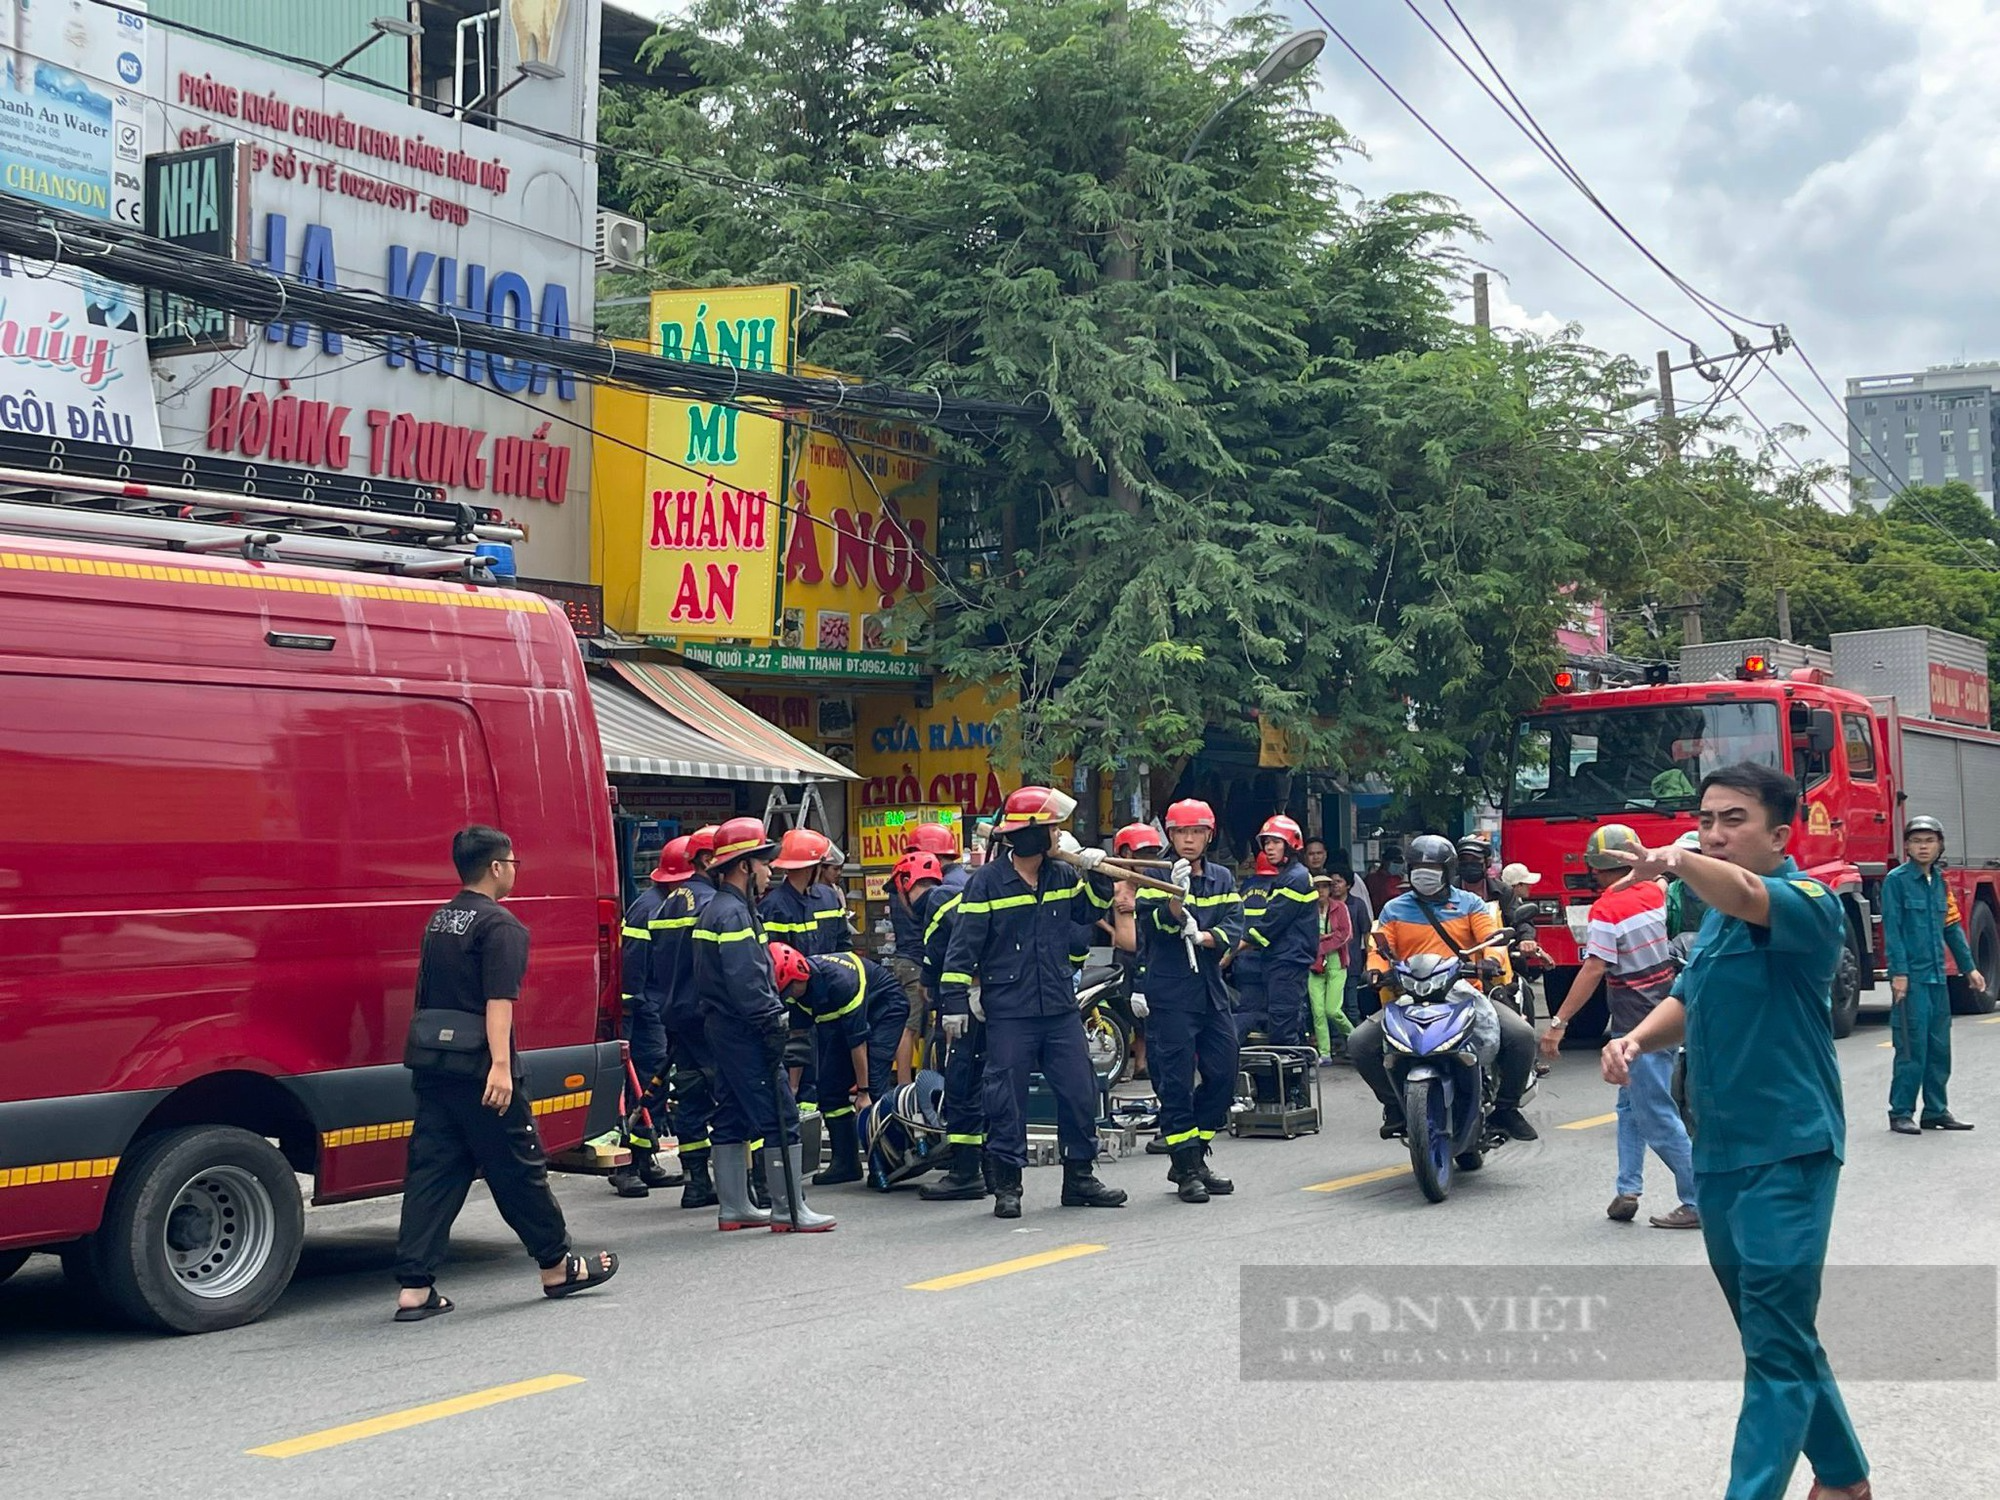 UBND quận Bình Thạnh thông tin bước đầu về vụ sập nhà 4 tầng trong hẻm ở Sài Gòn - Ảnh 2.